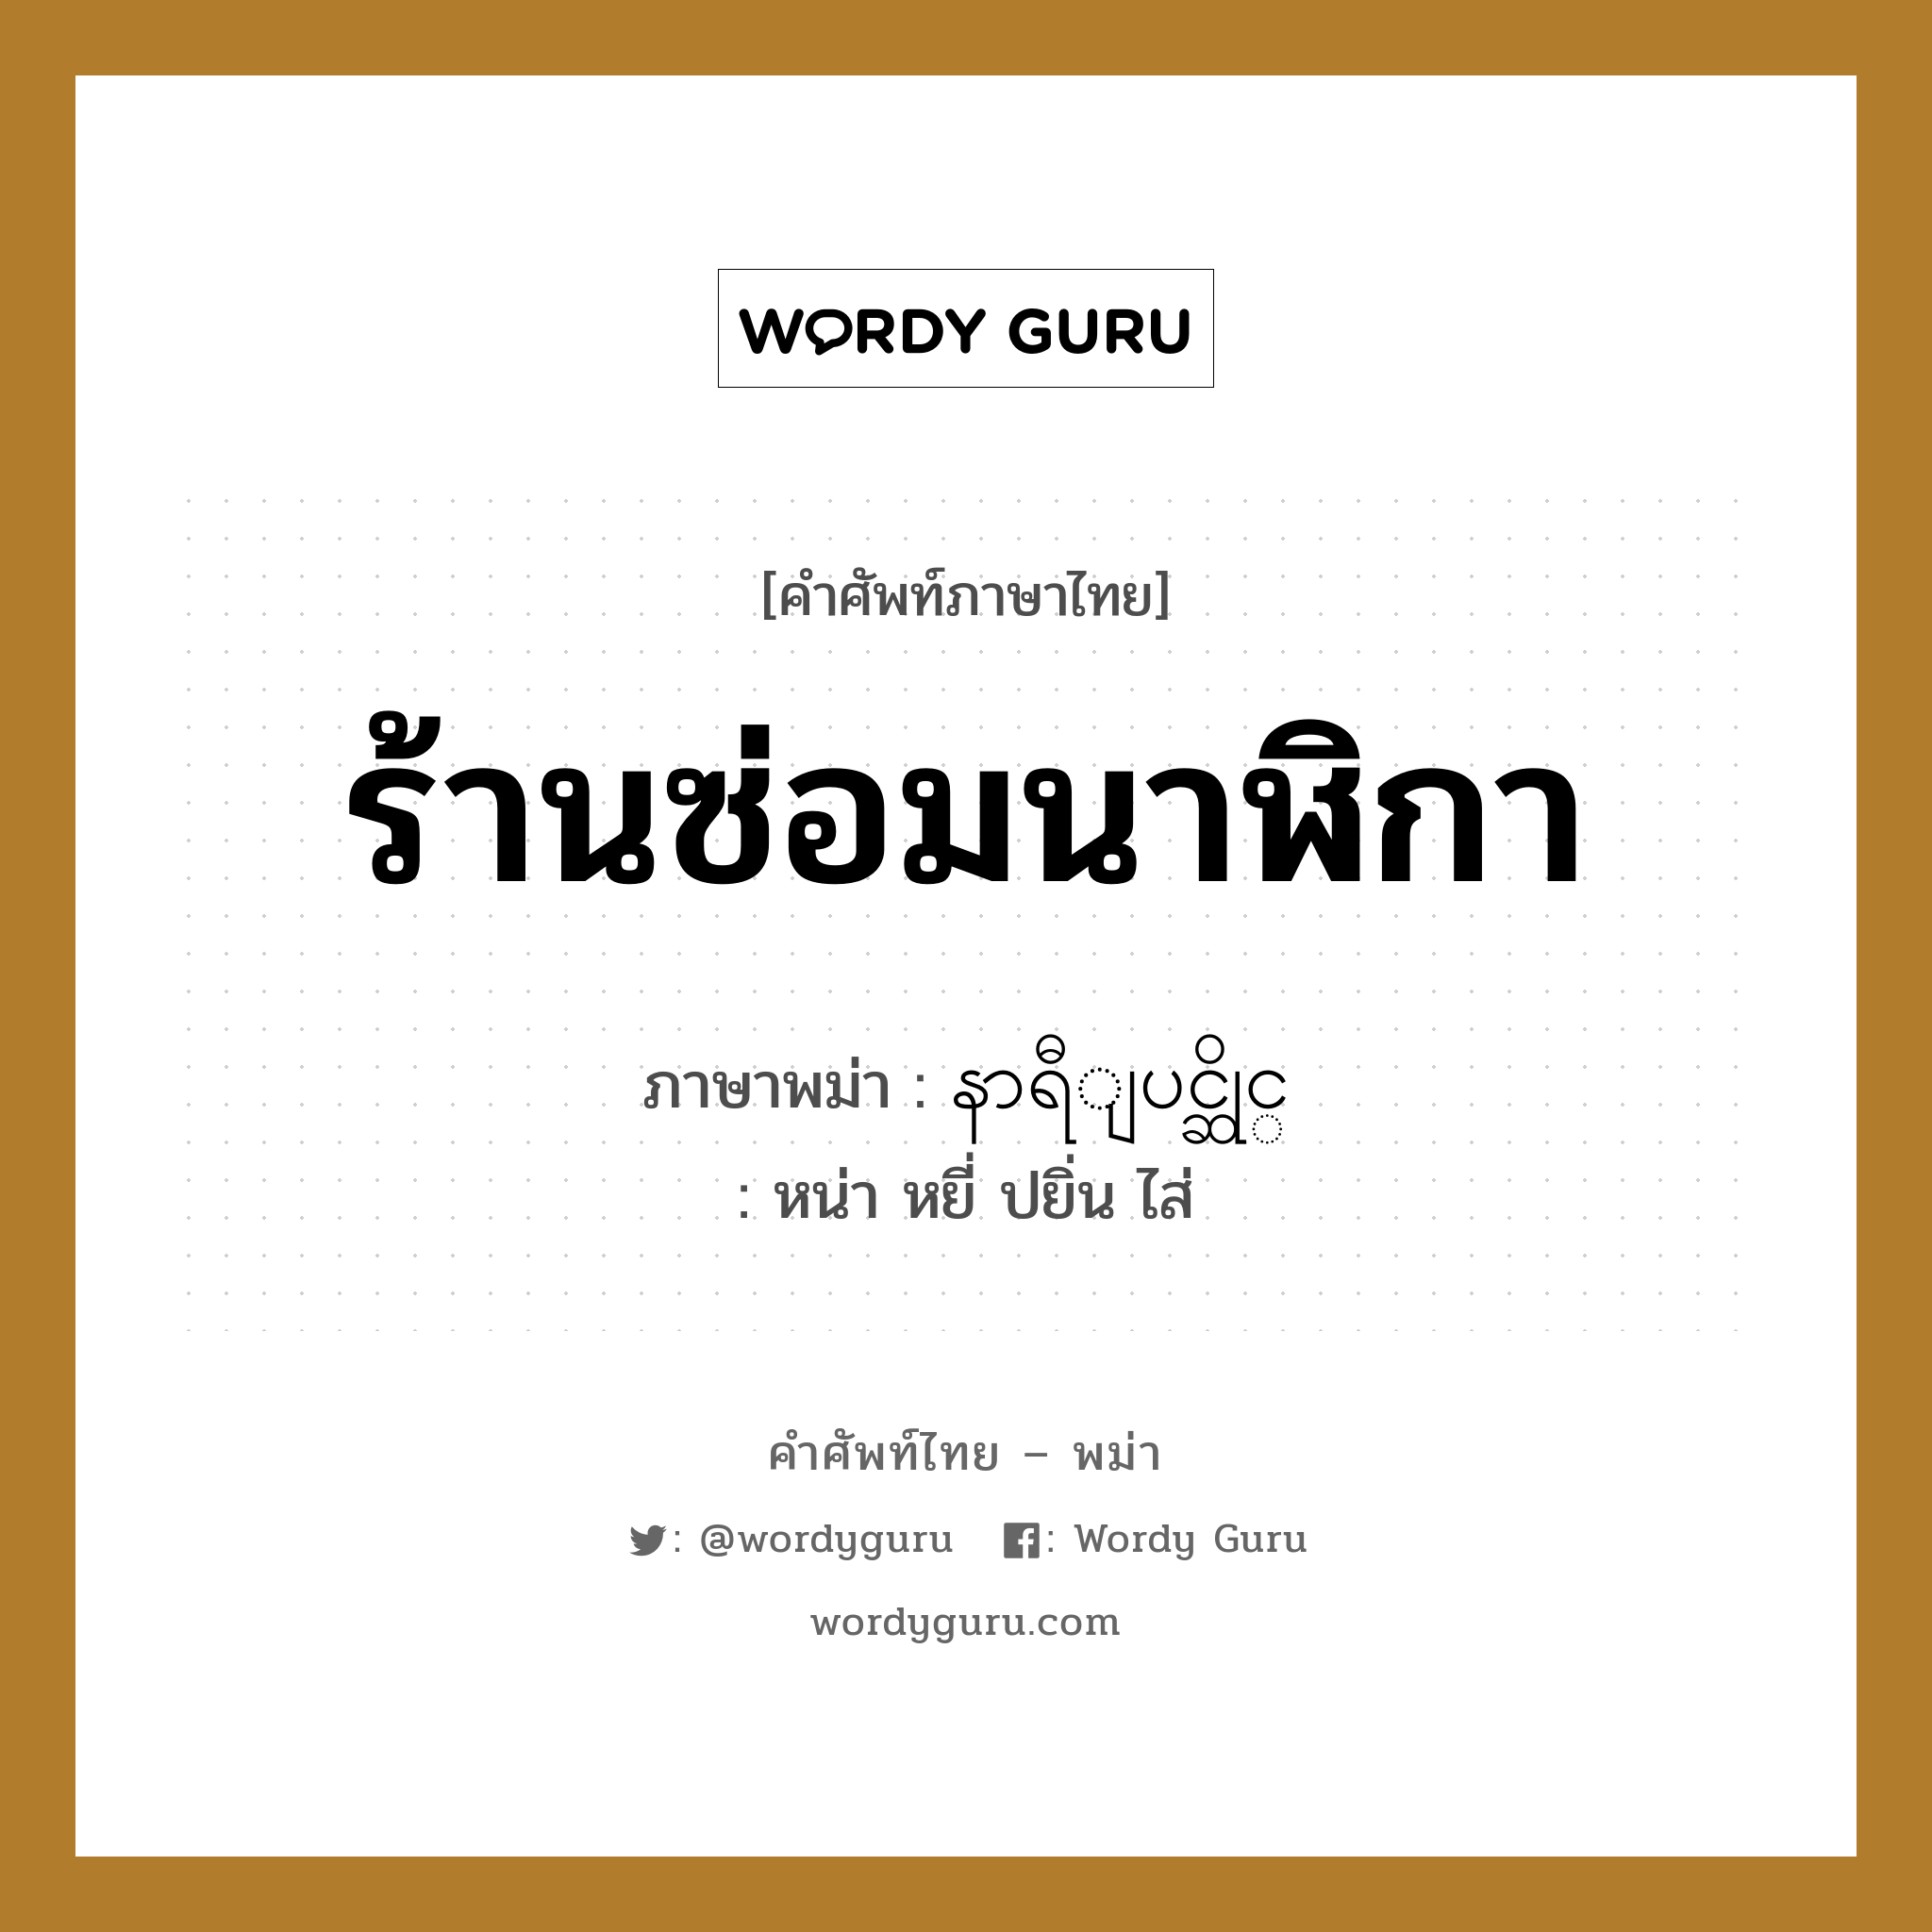 နာရီျပင္ဆိုင္ ภาษาไทย?, คำศัพท์ภาษาไทย - พม่า နာရီျပင္ဆိုင္ ภาษาพม่า ร้านซ่อมนาฬิกา หมวด หมวดร้านค้าทั่วไป หน่า หยี่ ปยิ่น ไส่ หมวด หมวดร้านค้าทั่วไป